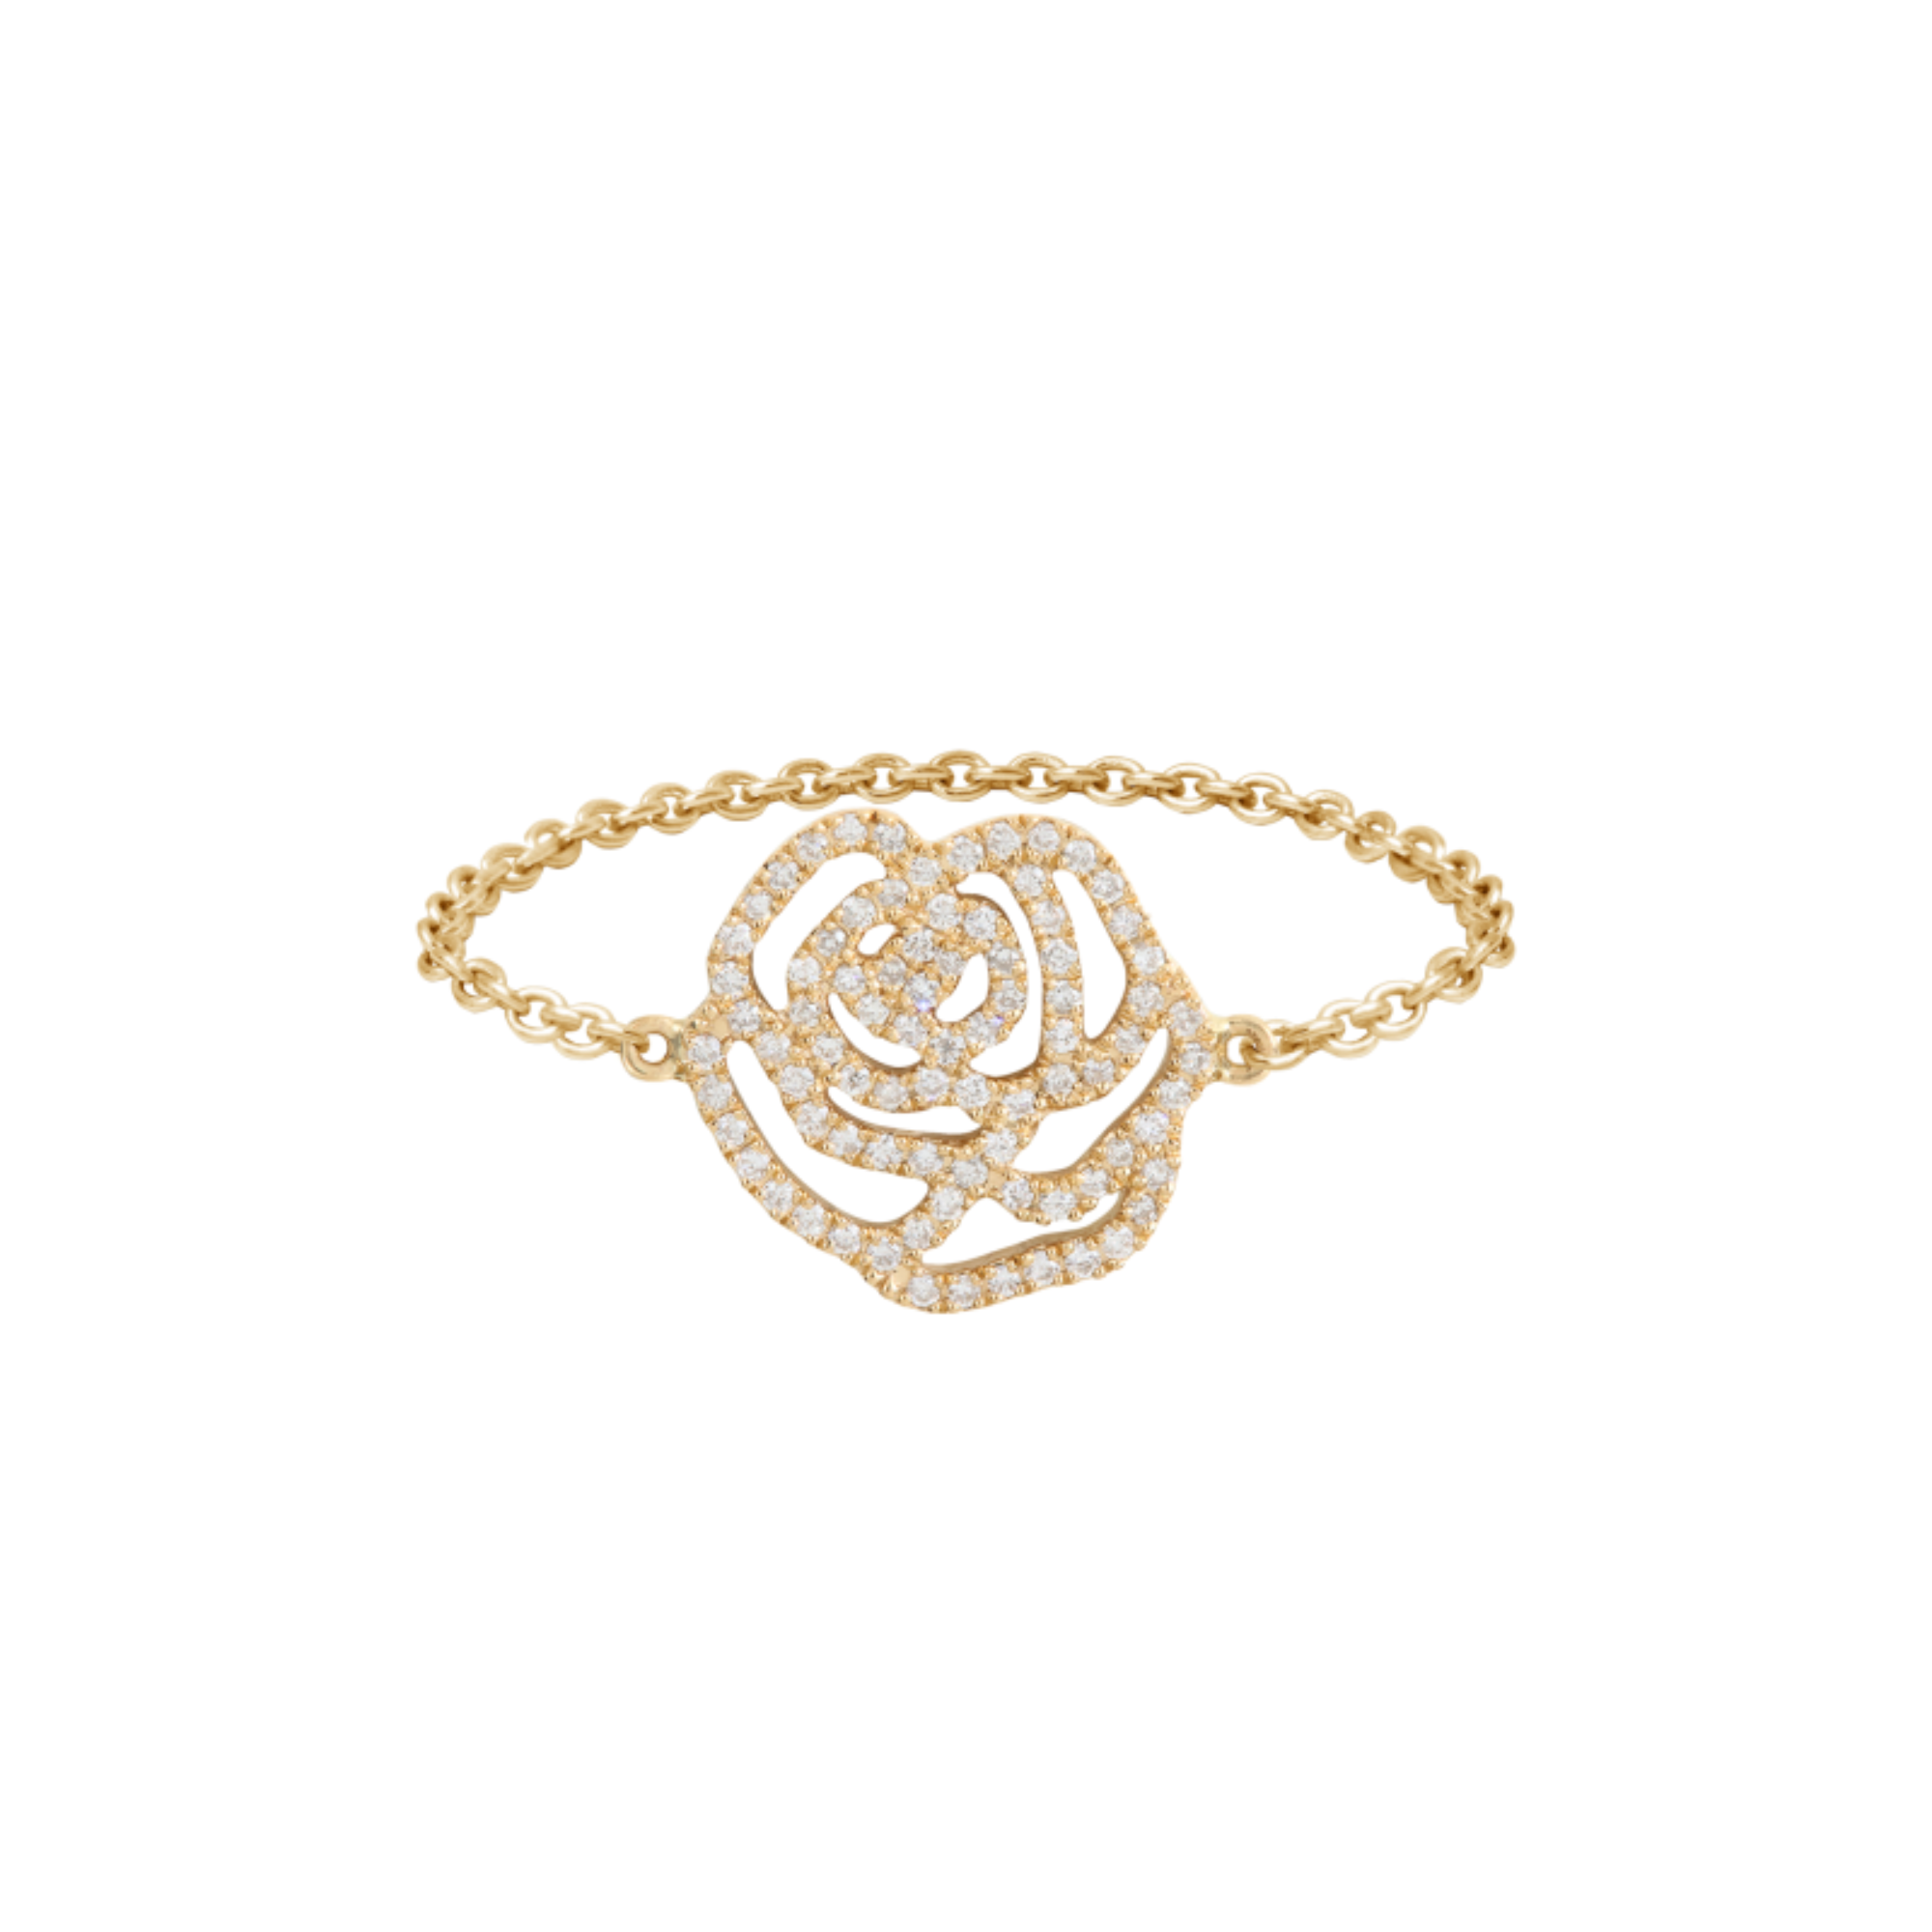 Bague chaînette fleur la rose en or jaune et diamants pour femme. Fabriqué en France, ce bijou élégant et raffiné de joaillerie fine est très prisé des célébrités et est un cadeau de Noël, d'anniversaire ou de naissance idéal.